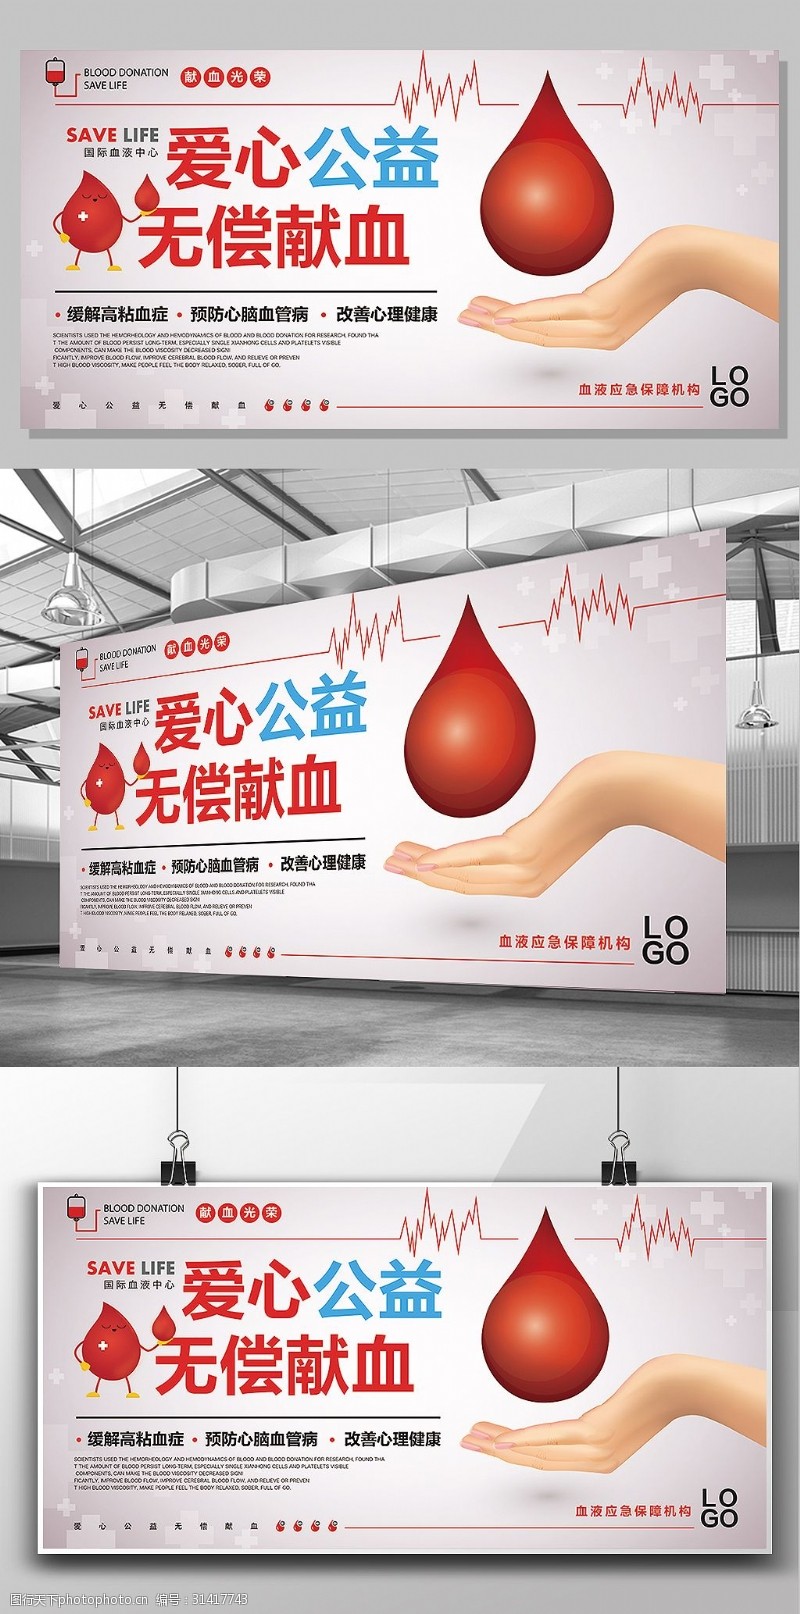 献血海报爱心公益主题无偿献血创意展板